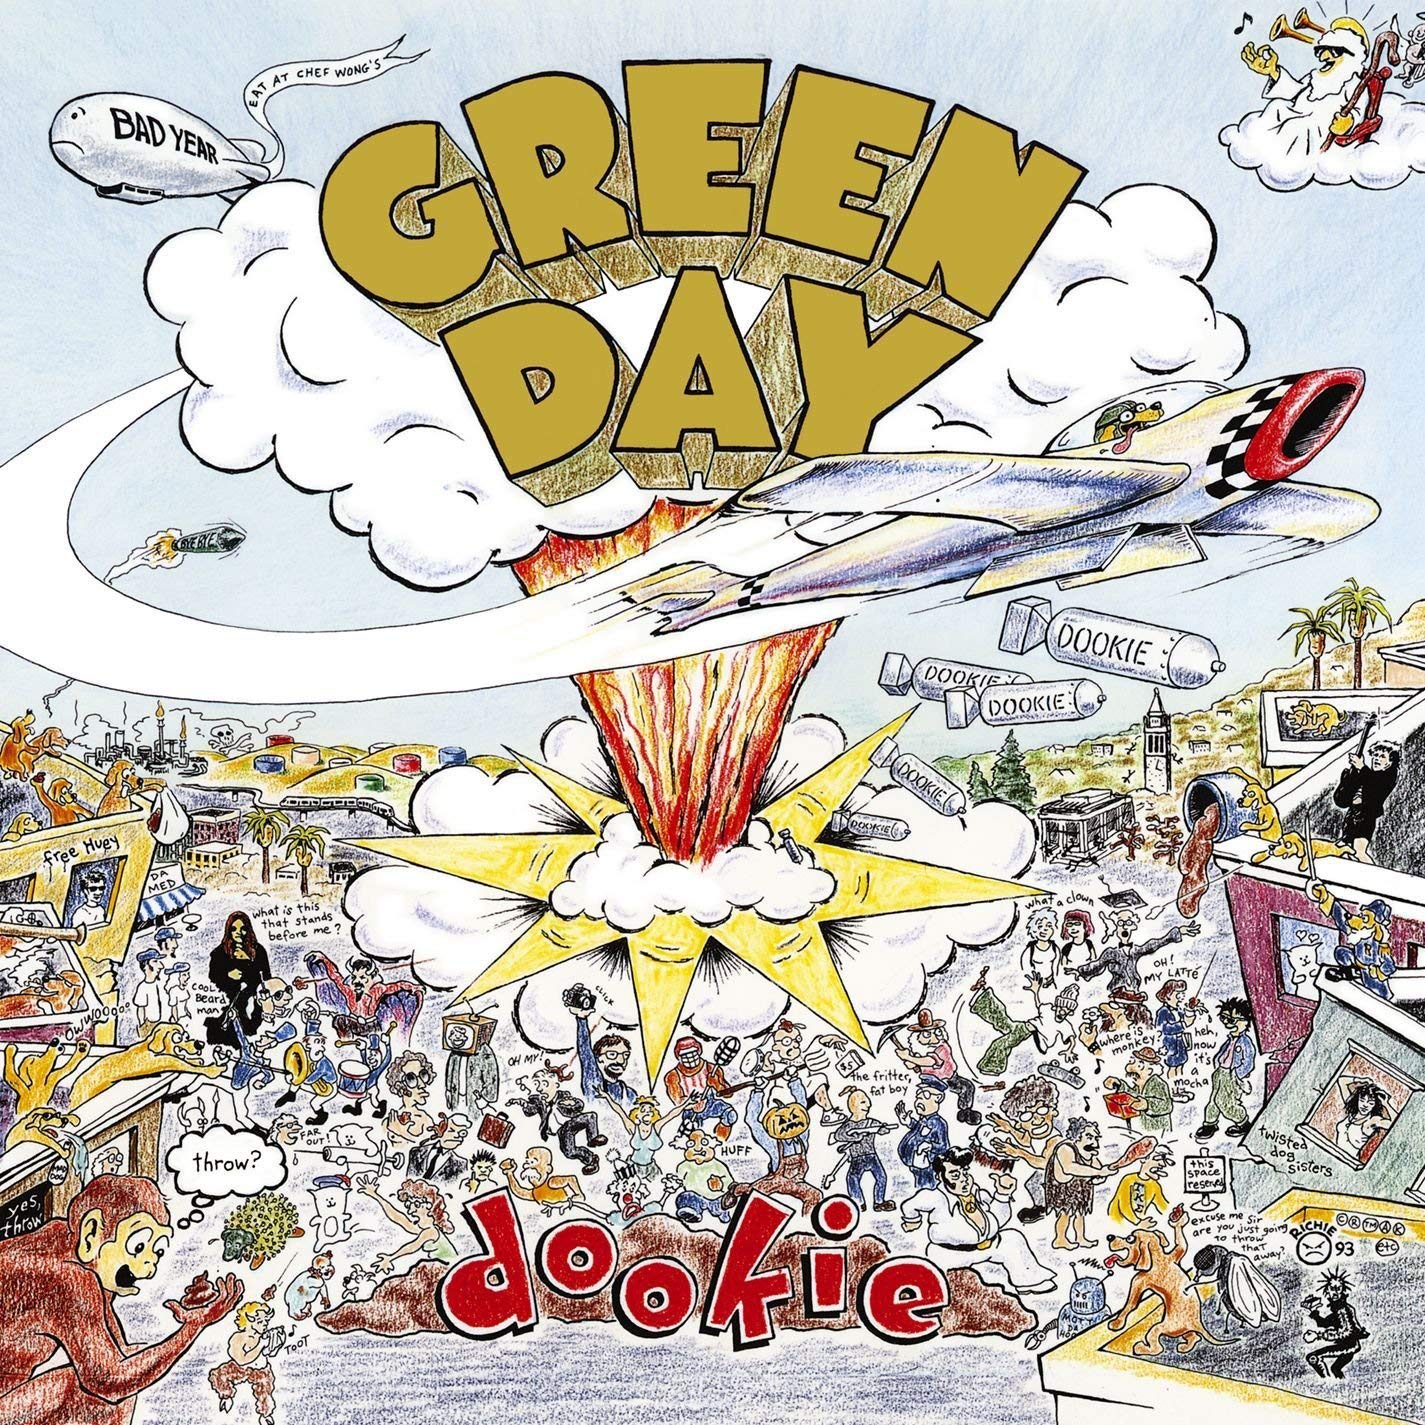 Vandaag (1 februari) in 1994: Green Day brengt Dookie uit